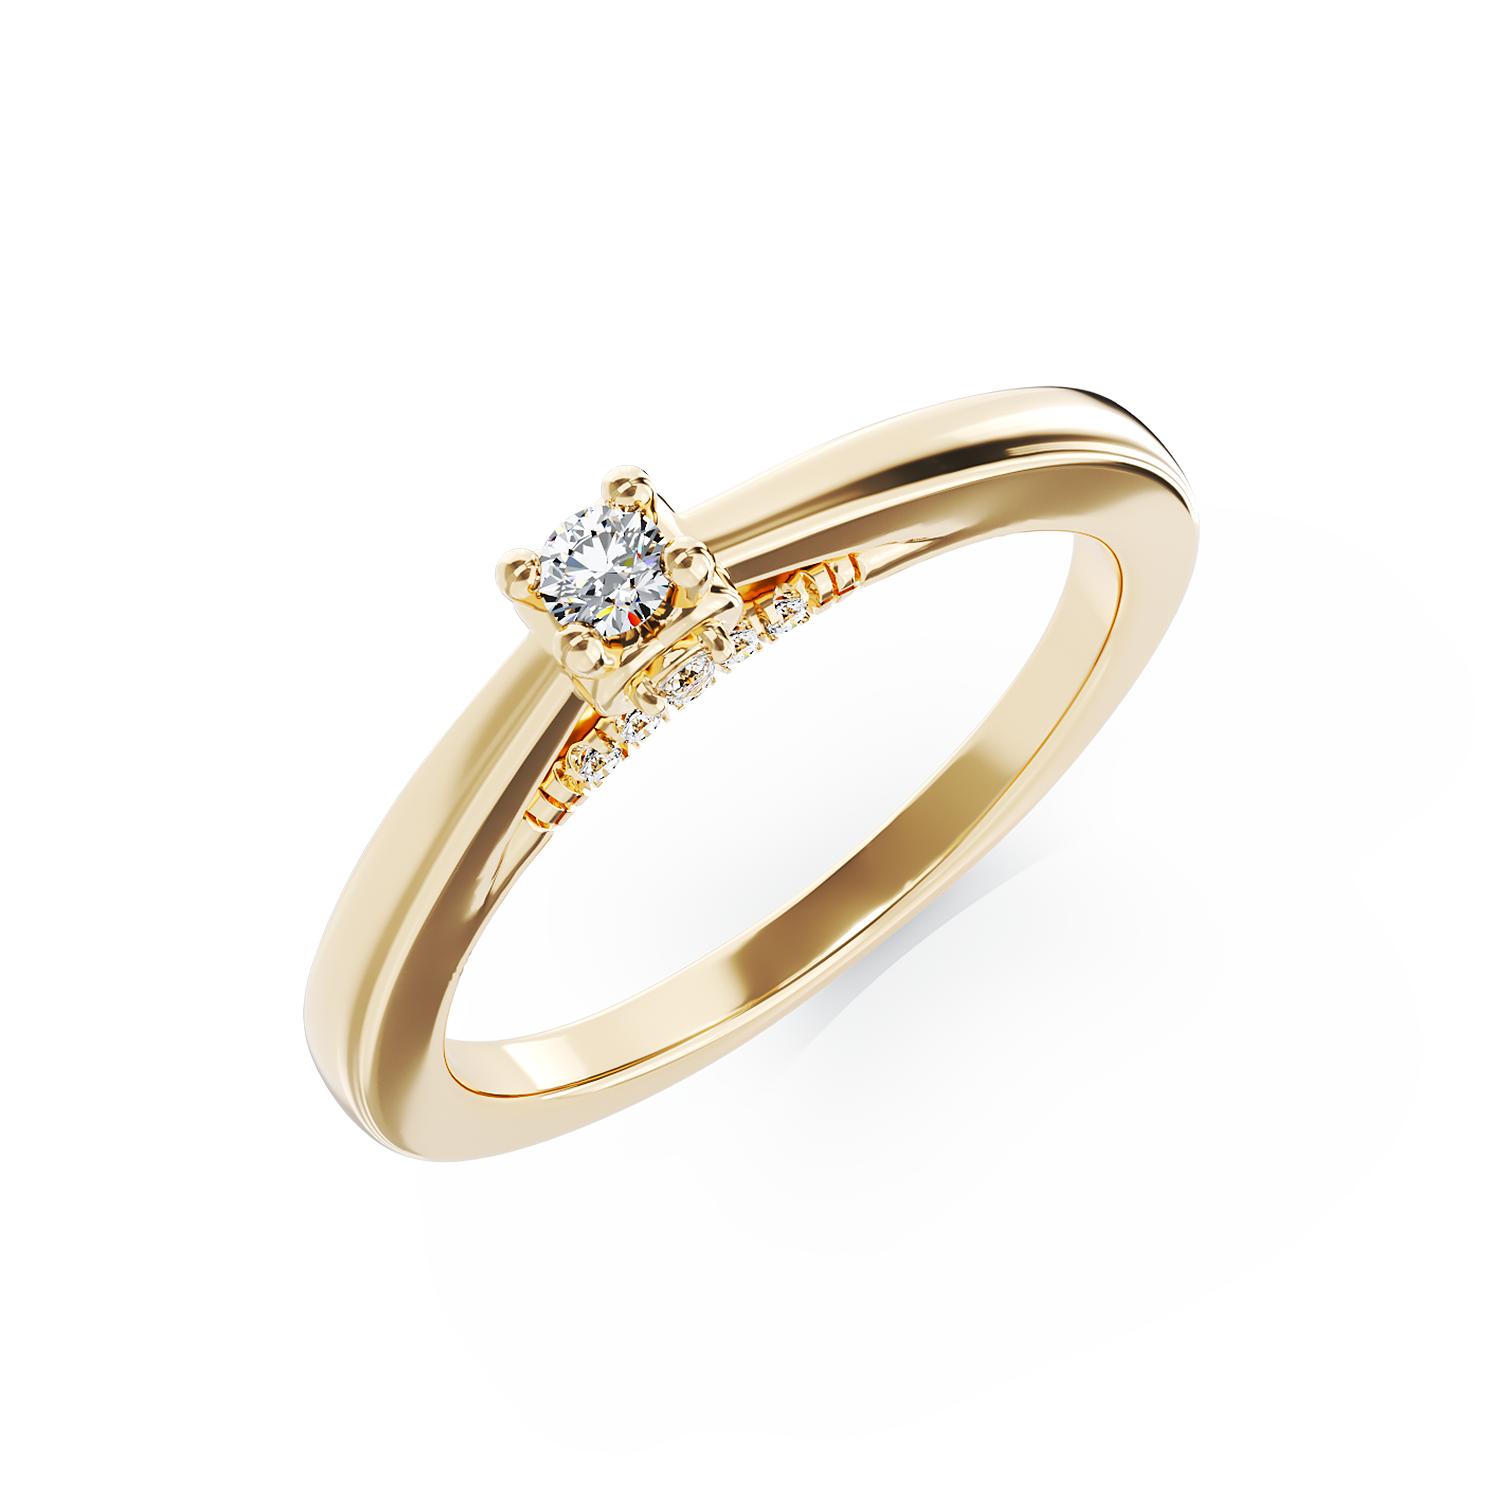 Eljegyzési gyűrű 18K-os sárga aranyból 0,12ct gyémánttal és 0,05ct gyémántokkal. Gramm: 2,7